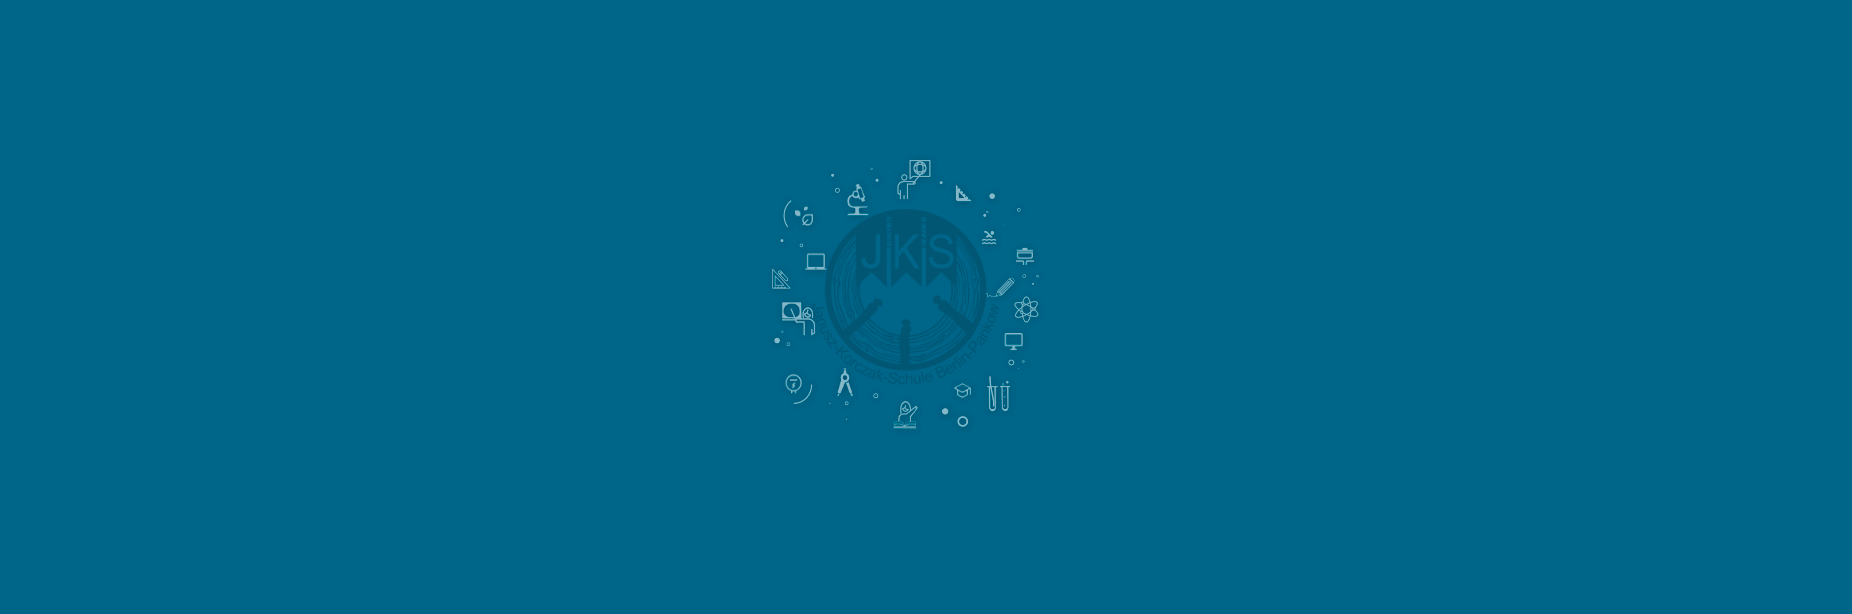 Bild: Janusz-Korczak-Schule, Logo auf blauem Hintergrund